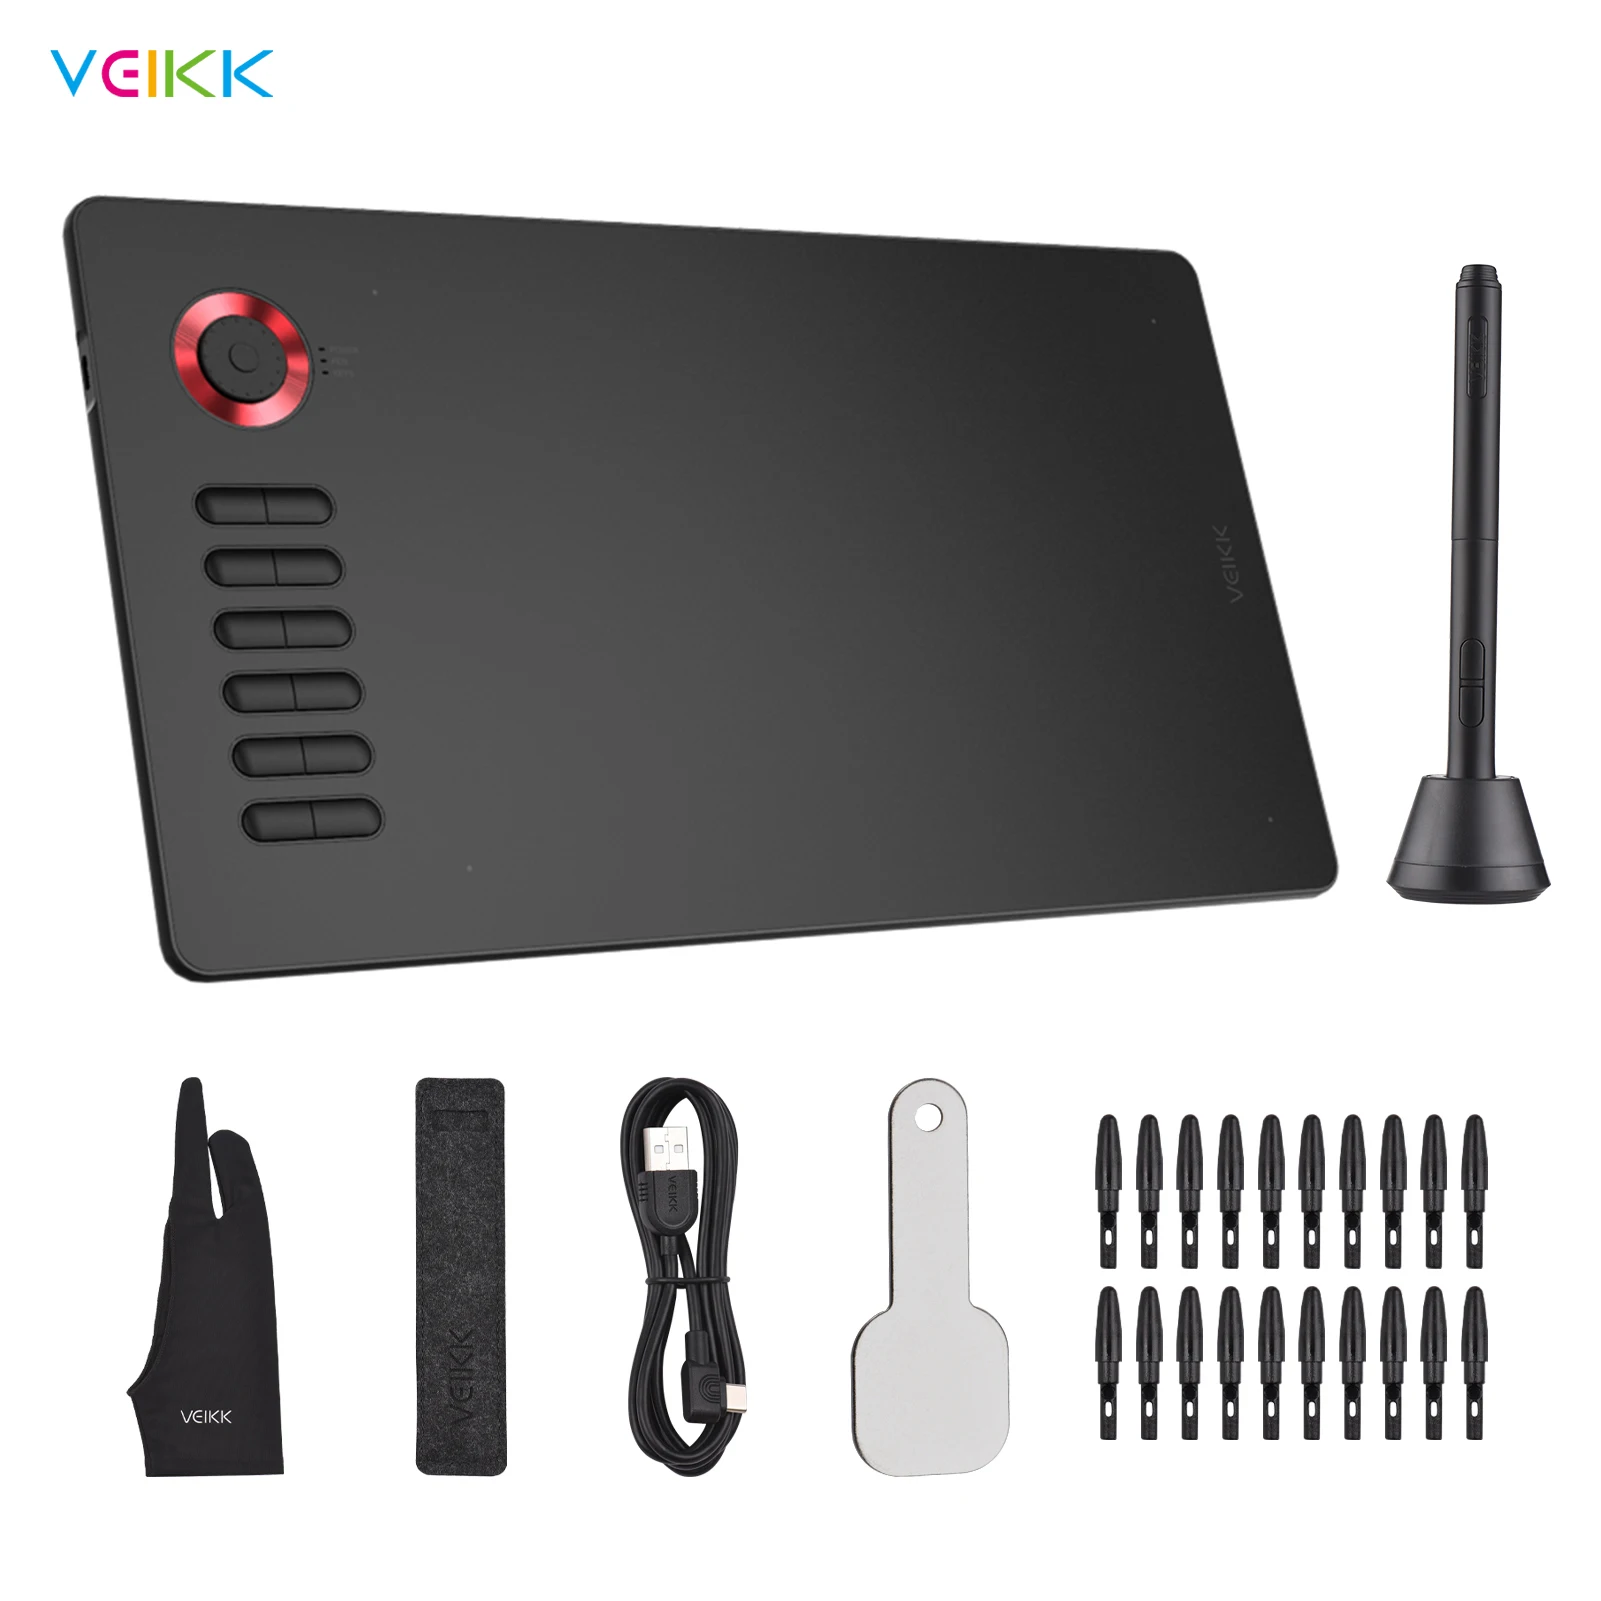 

Графический планшет для рисования VEIKK A15 Pro, 10x6 дюймов, 8192 чувствительности, ручка без батареи, 12 горячих клавиш и функциональный циферблат, о...